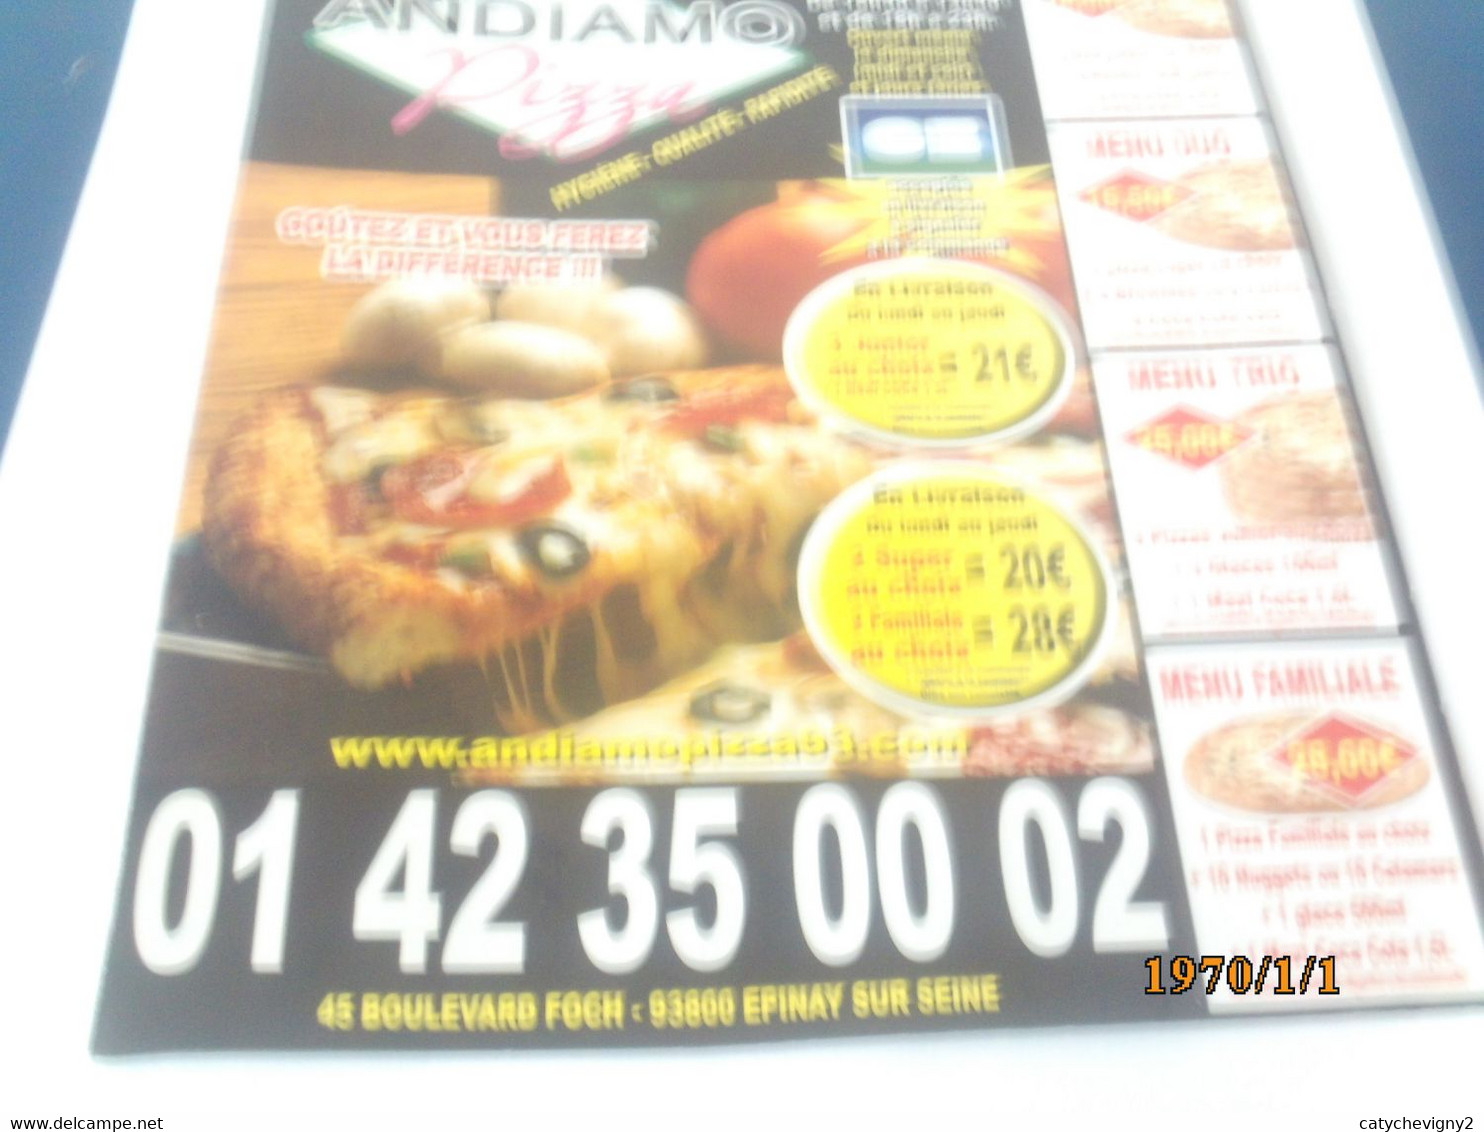 LOT DE 10 DEPLIANTS DE PIZZAS   QUI FAIT LA MEILLEURE PIZZA - Poster & Plakate